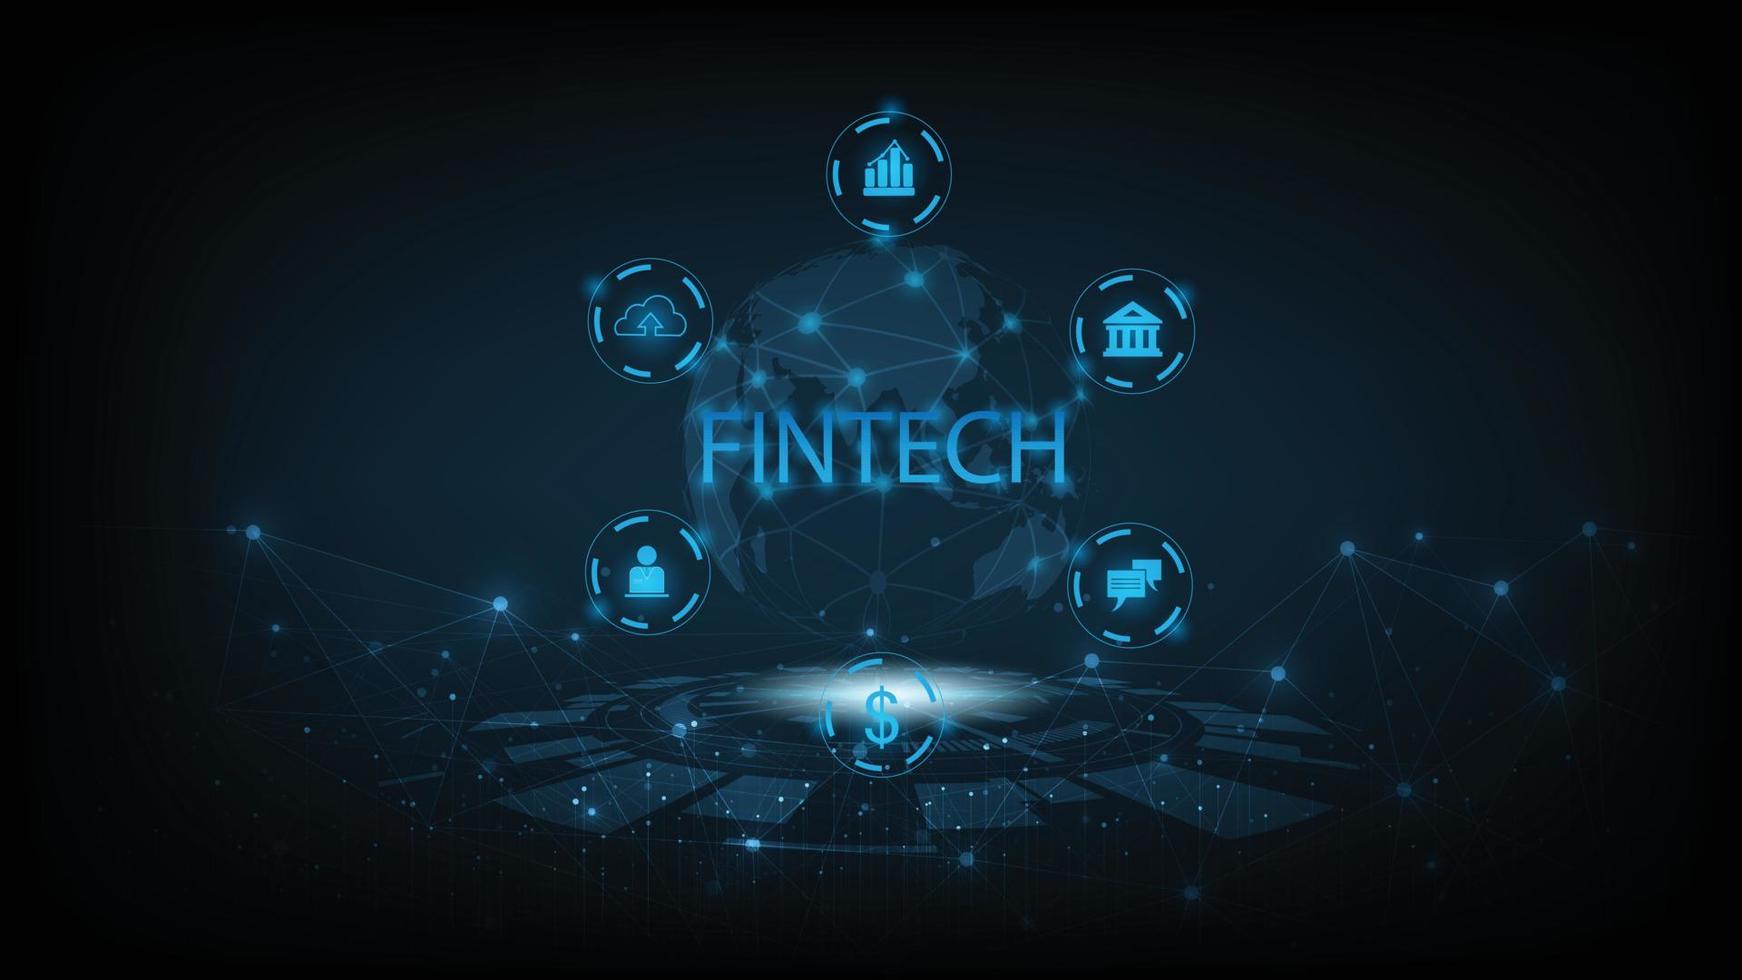 finansiell teknologi begrepp och företag värld klass design.ikon fintech och saker på mörk blå teknologi bakgrund representerar de förbindelse finansiell teknik, bank och företag värld klass. vektor